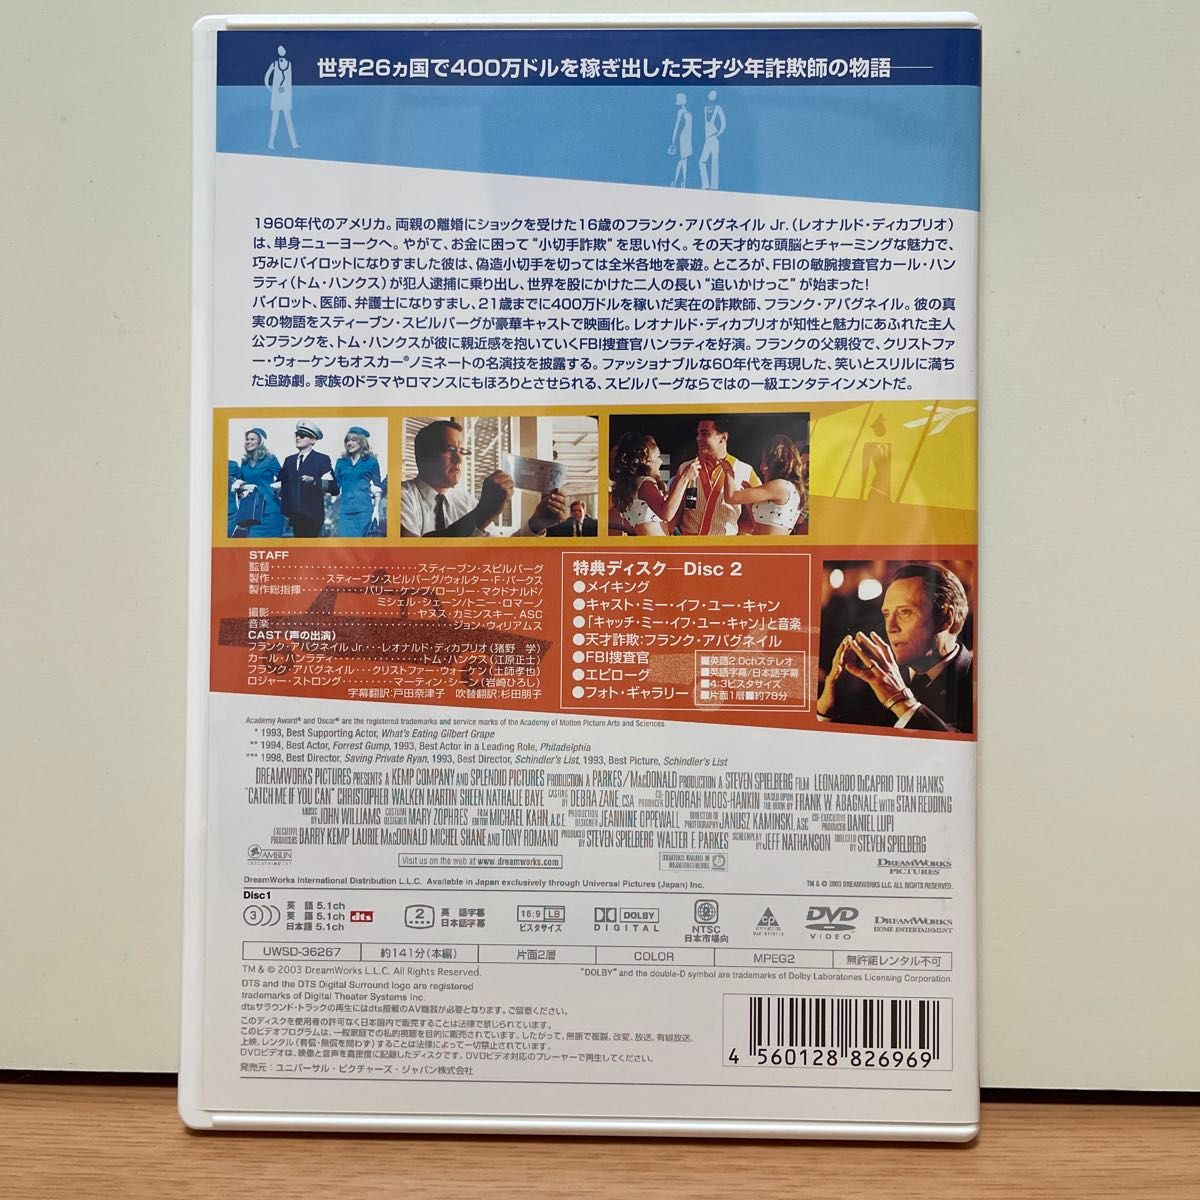 キャッチ・ミー・イフ・ユー・キャン('02米)〈初回限定生産・2枚組〉 DVD